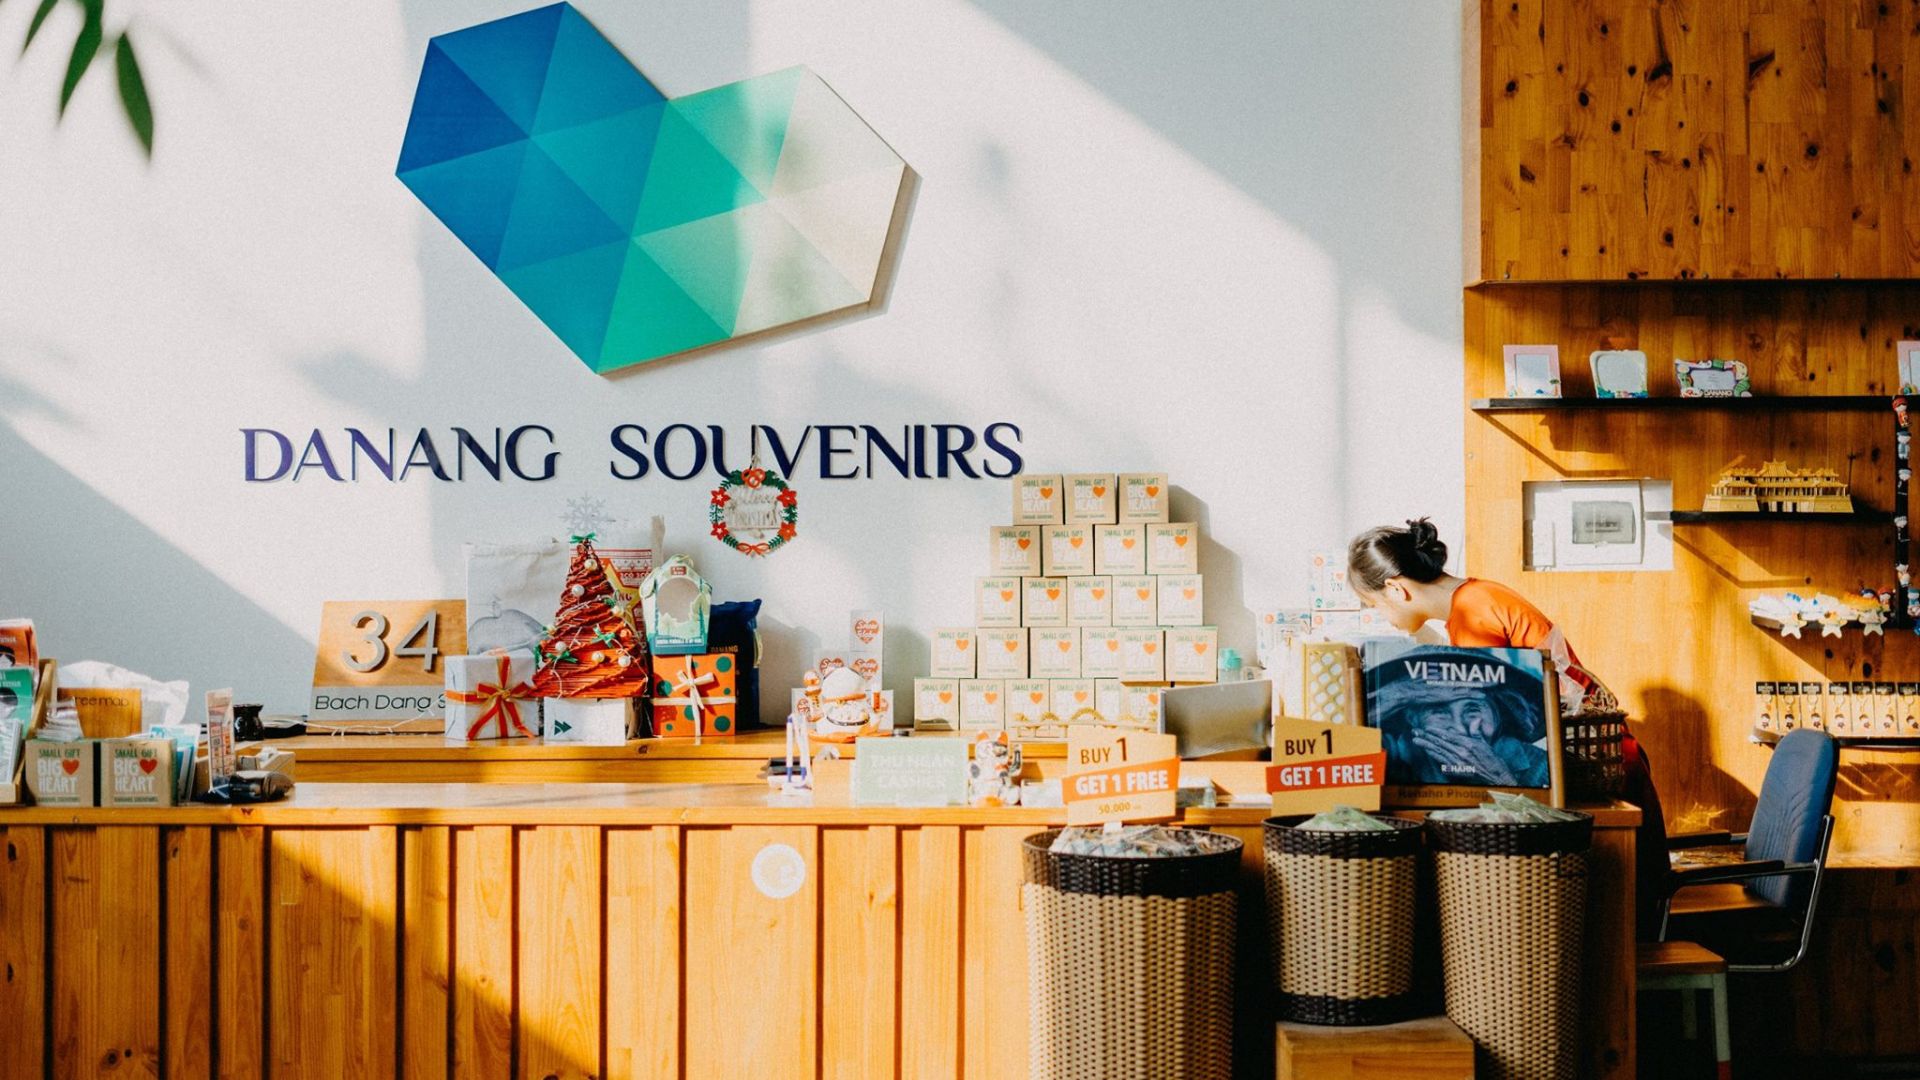 Đà Nẵng Souvenirs & Cafe - Địa chỉ bán quà lưu niệm chất lượng tại Đà Nẵng